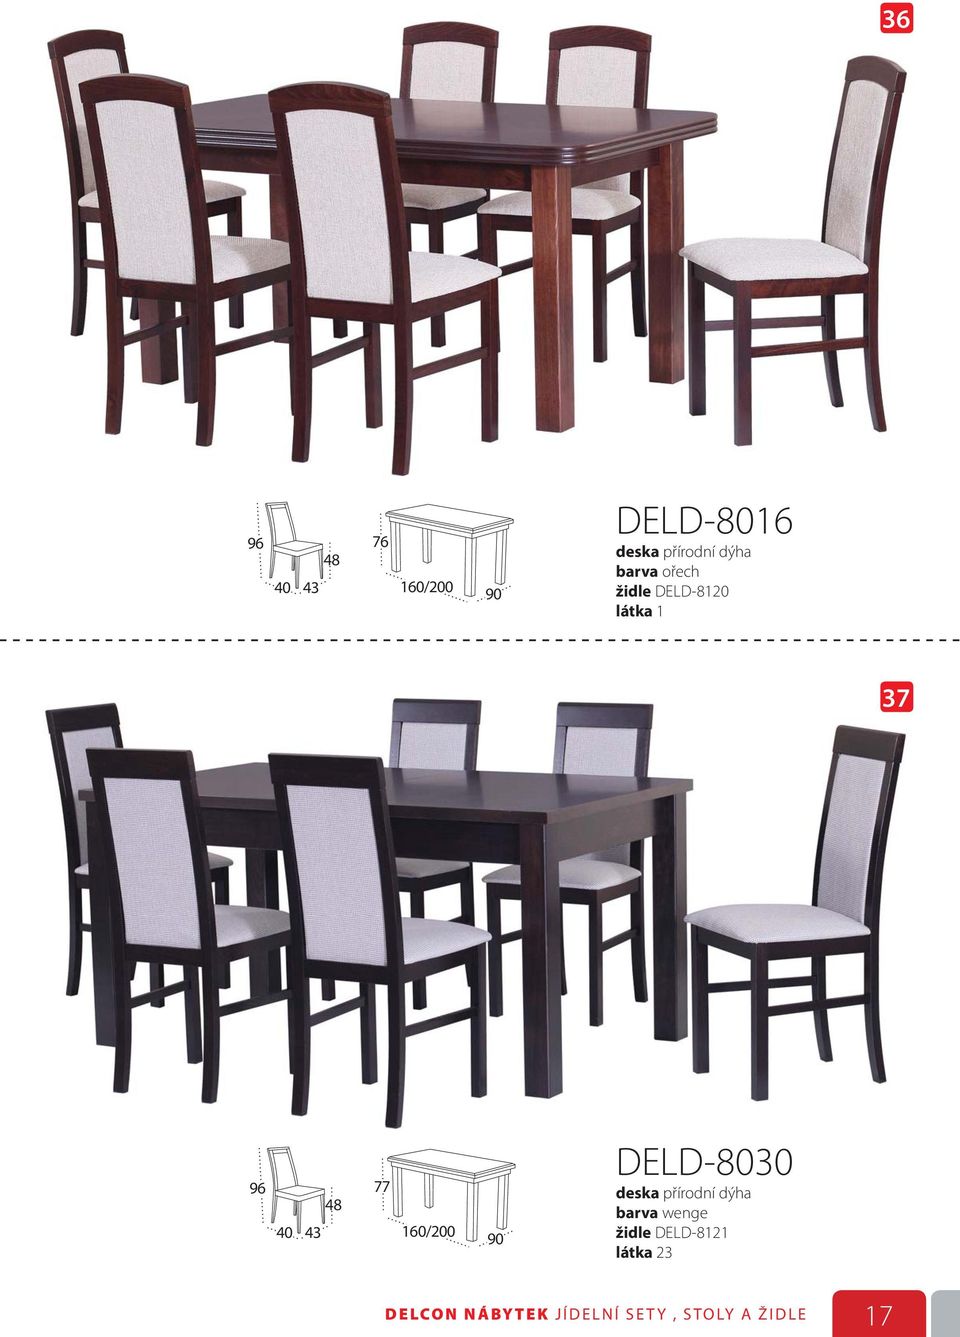 židle DELD-8121 látka 23 DELCON